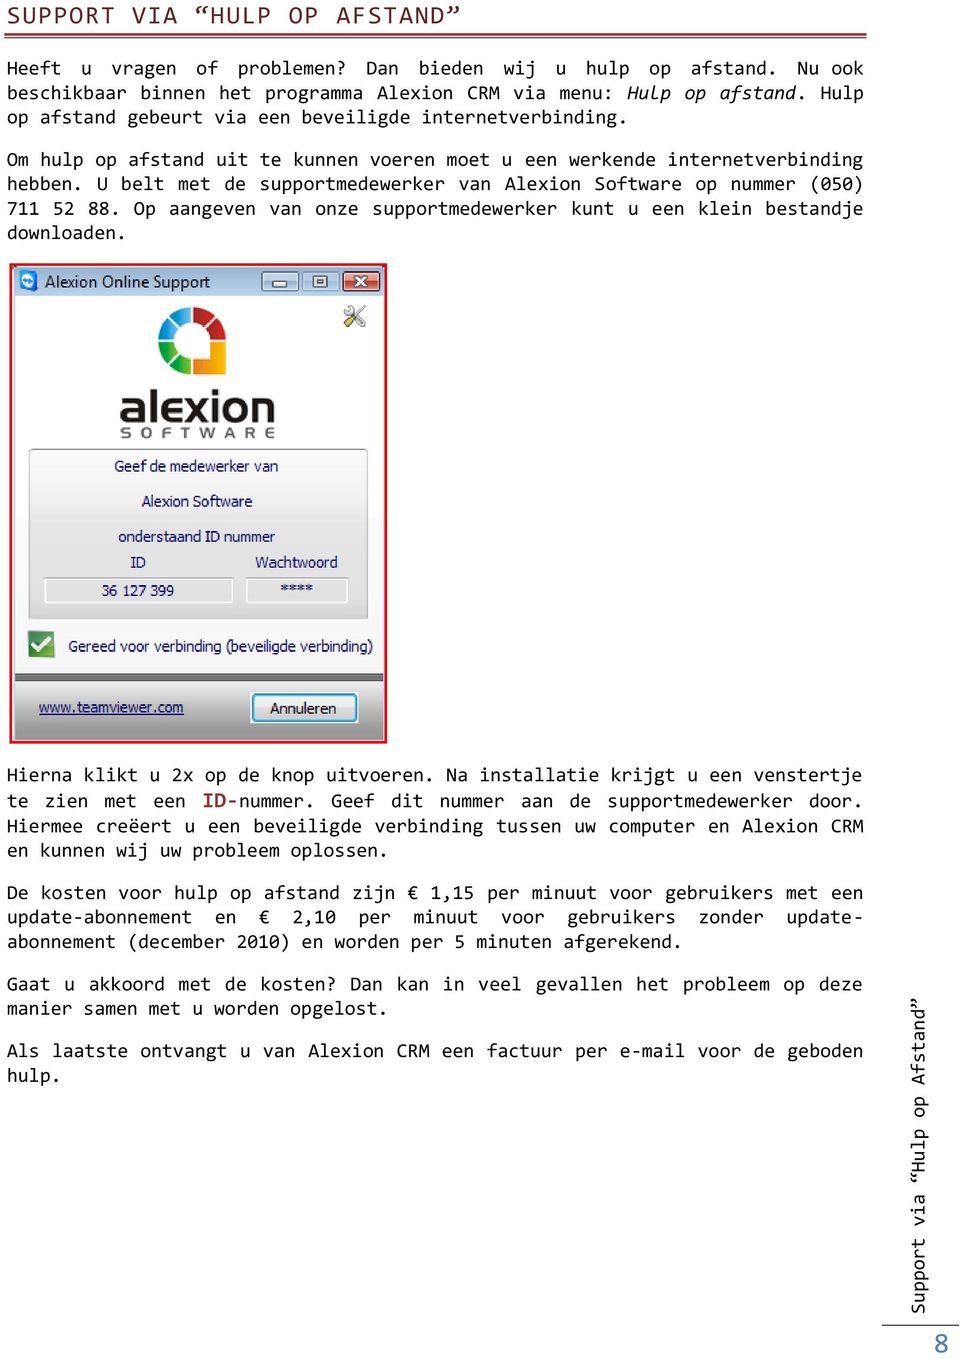 U belt met de supportmedewerker van Alexion Software op nummer (050) 711 52 88. Op aangeven van onze supportmedewerker kunt u een klein bestandje downloaden. Hierna klikt u 2x op de knop uitvoeren.